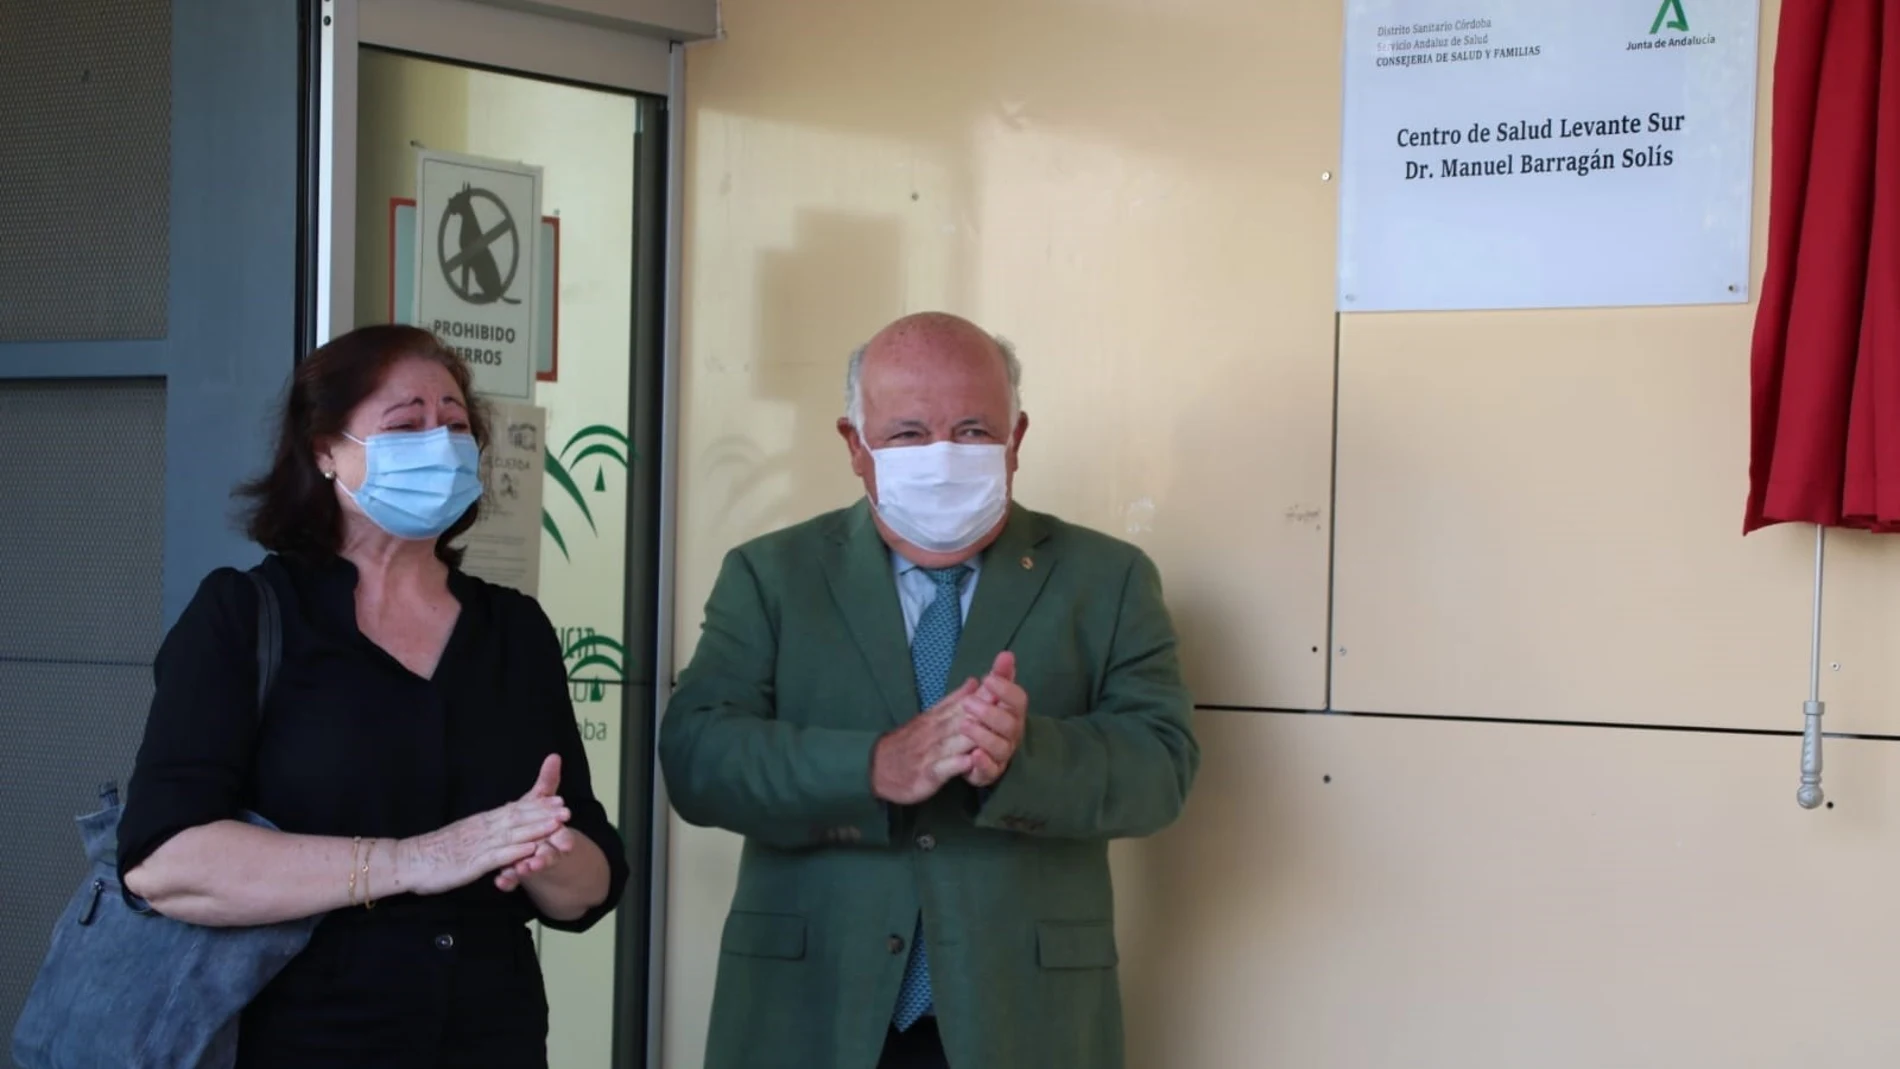 Córdoba.- Coronavirus.- El Centro de Salud Levante Sur pasa a llamarse Manuel Barragán, en honor al sanitario fallecido